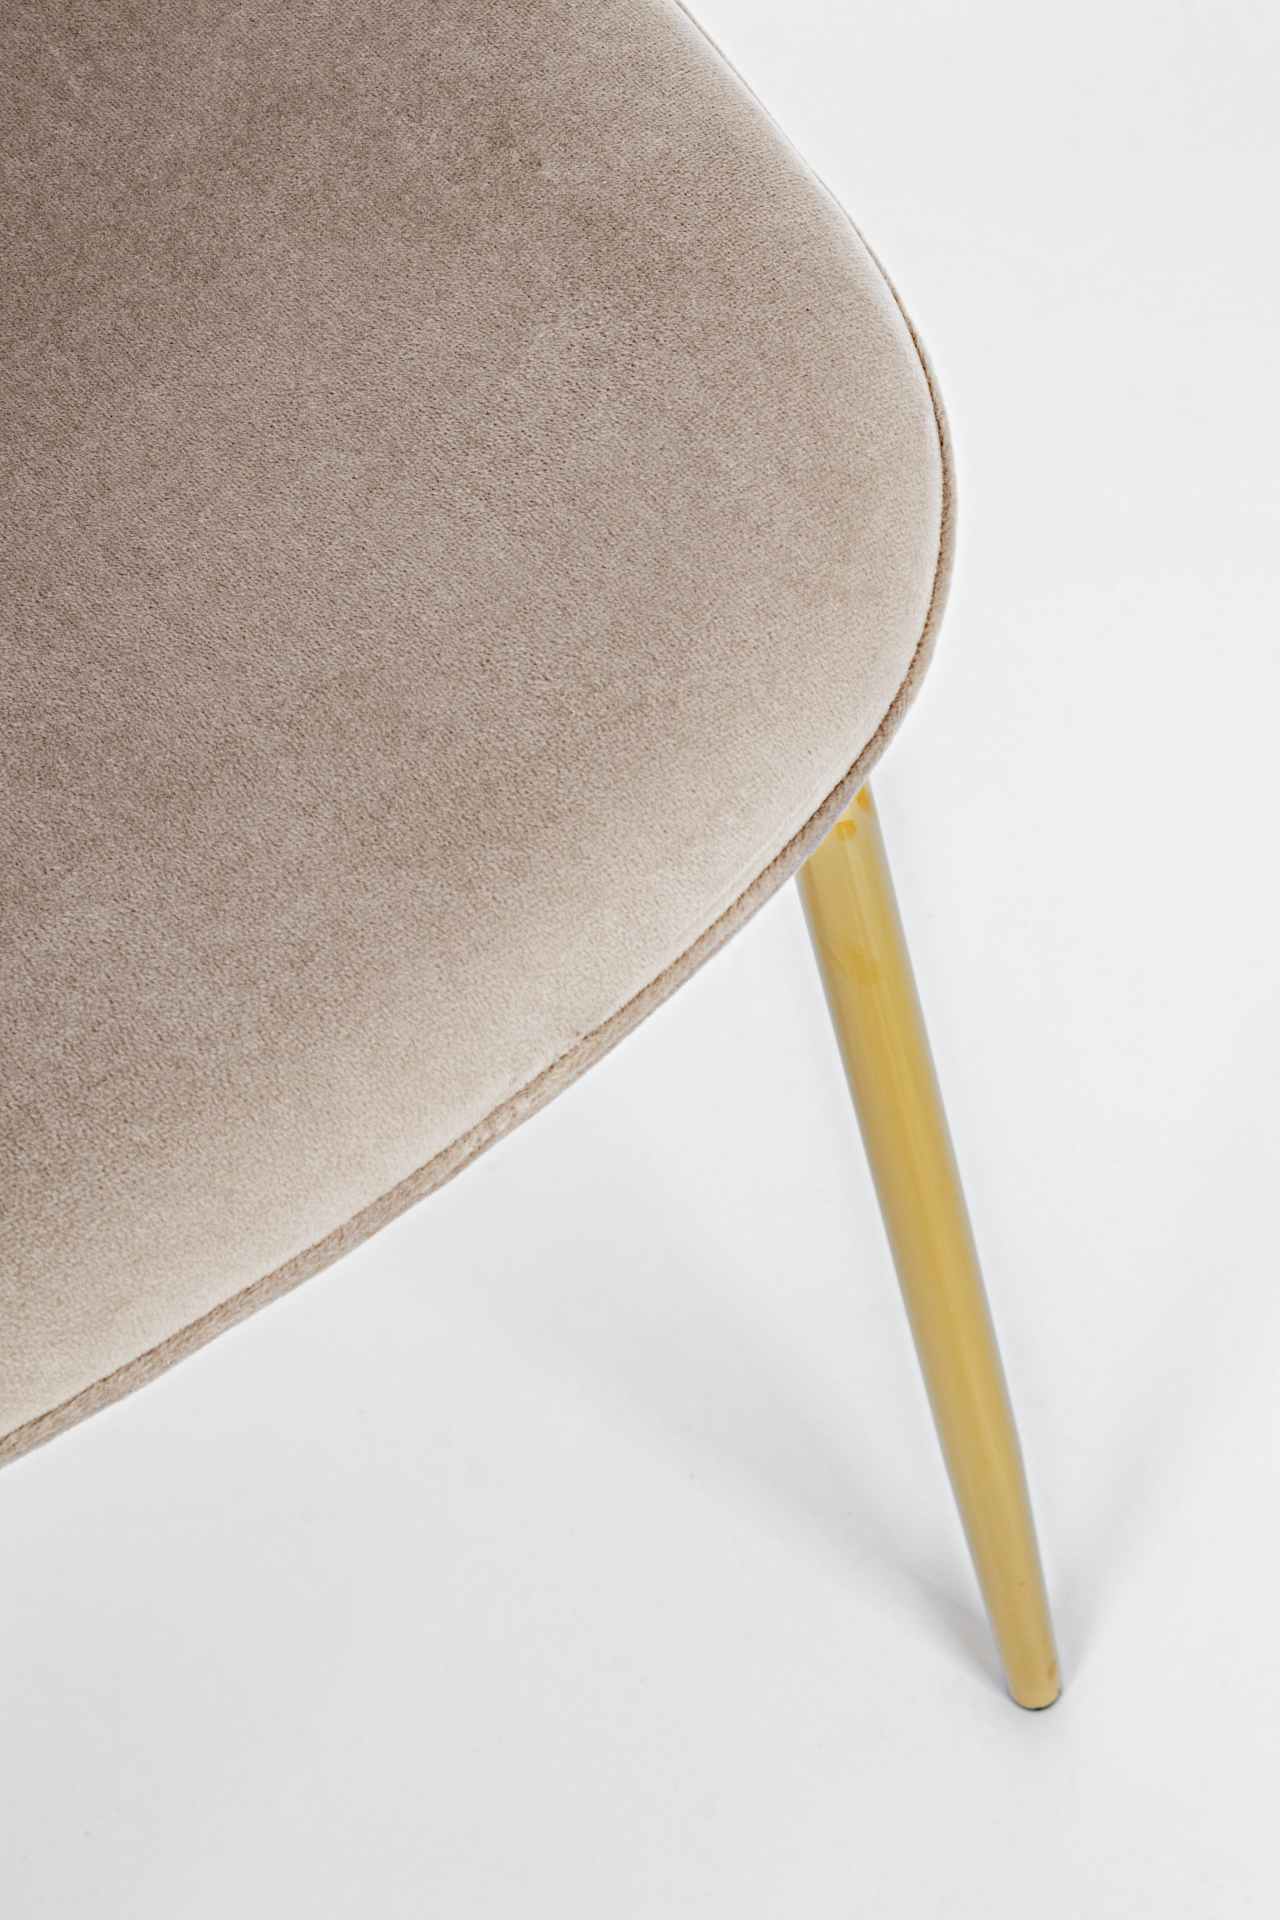 Der Esszimmerstuhl Terry überzeugt mit seinem modernem Design. Gefertigt wurde der Stuhl aus einem Samt-Bezug, welcher einen Taupe Farbton besitzt. Das Gestell ist aus Metall und ist Gold. Die Sitzhöhe beträgt 47 cm.